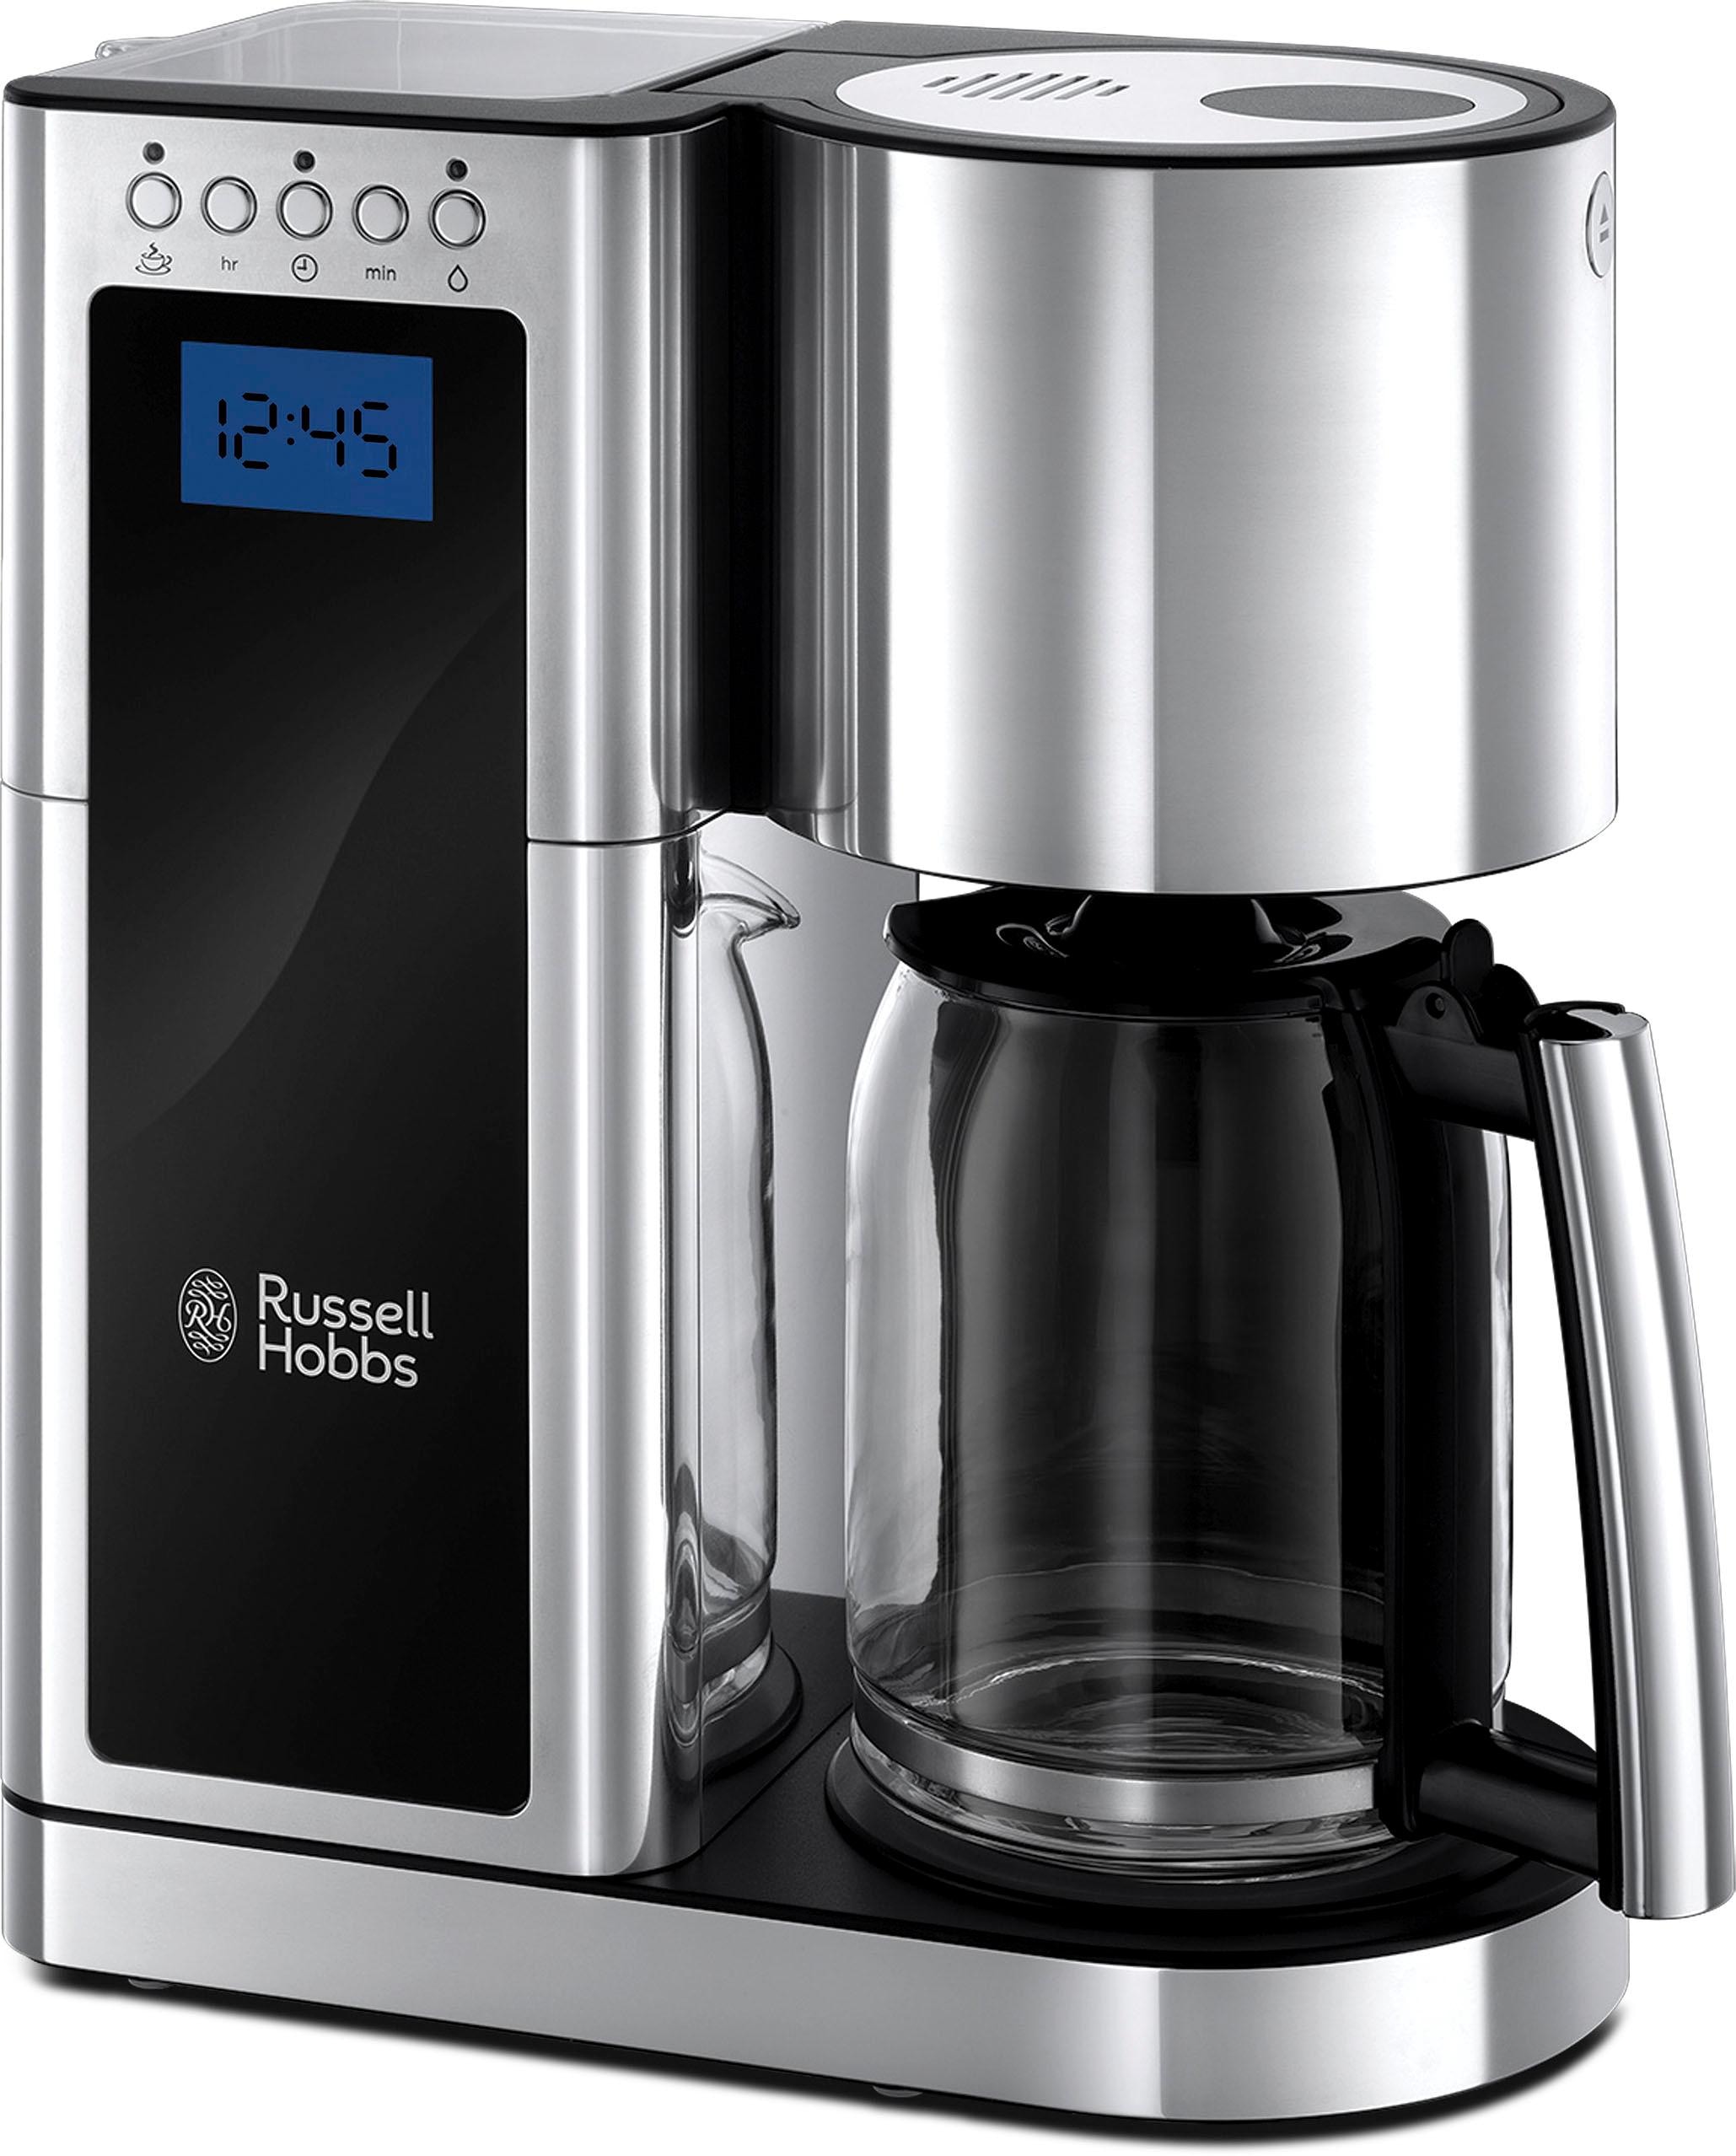 RUSSELL HOBBS Filterkaffeemaschine »Elegance Rechnung auf kaufen 1x4, 23370-56«, Watt 1600